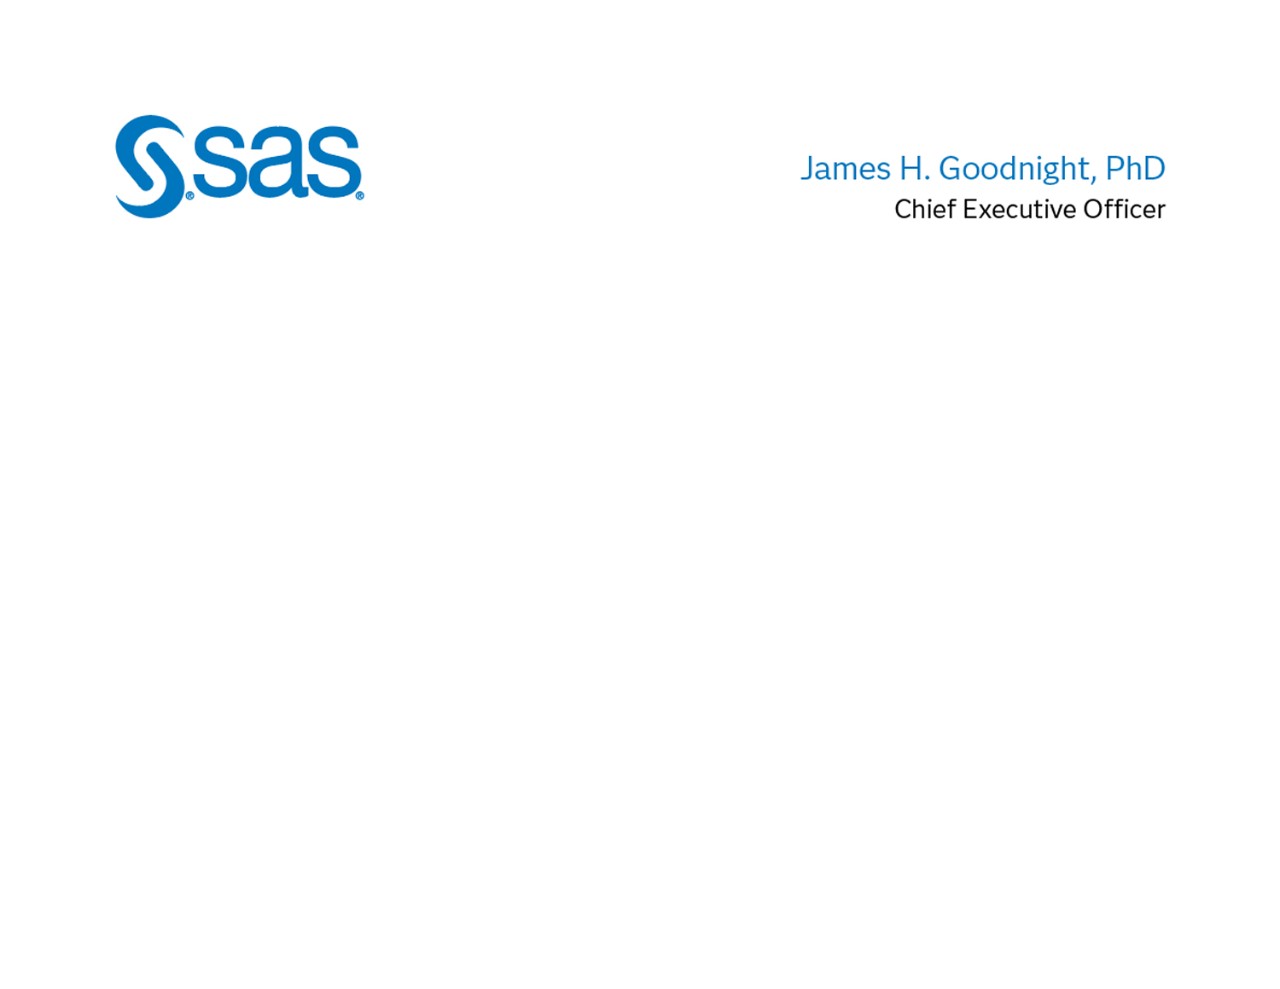 SAS corporate executive notecard design